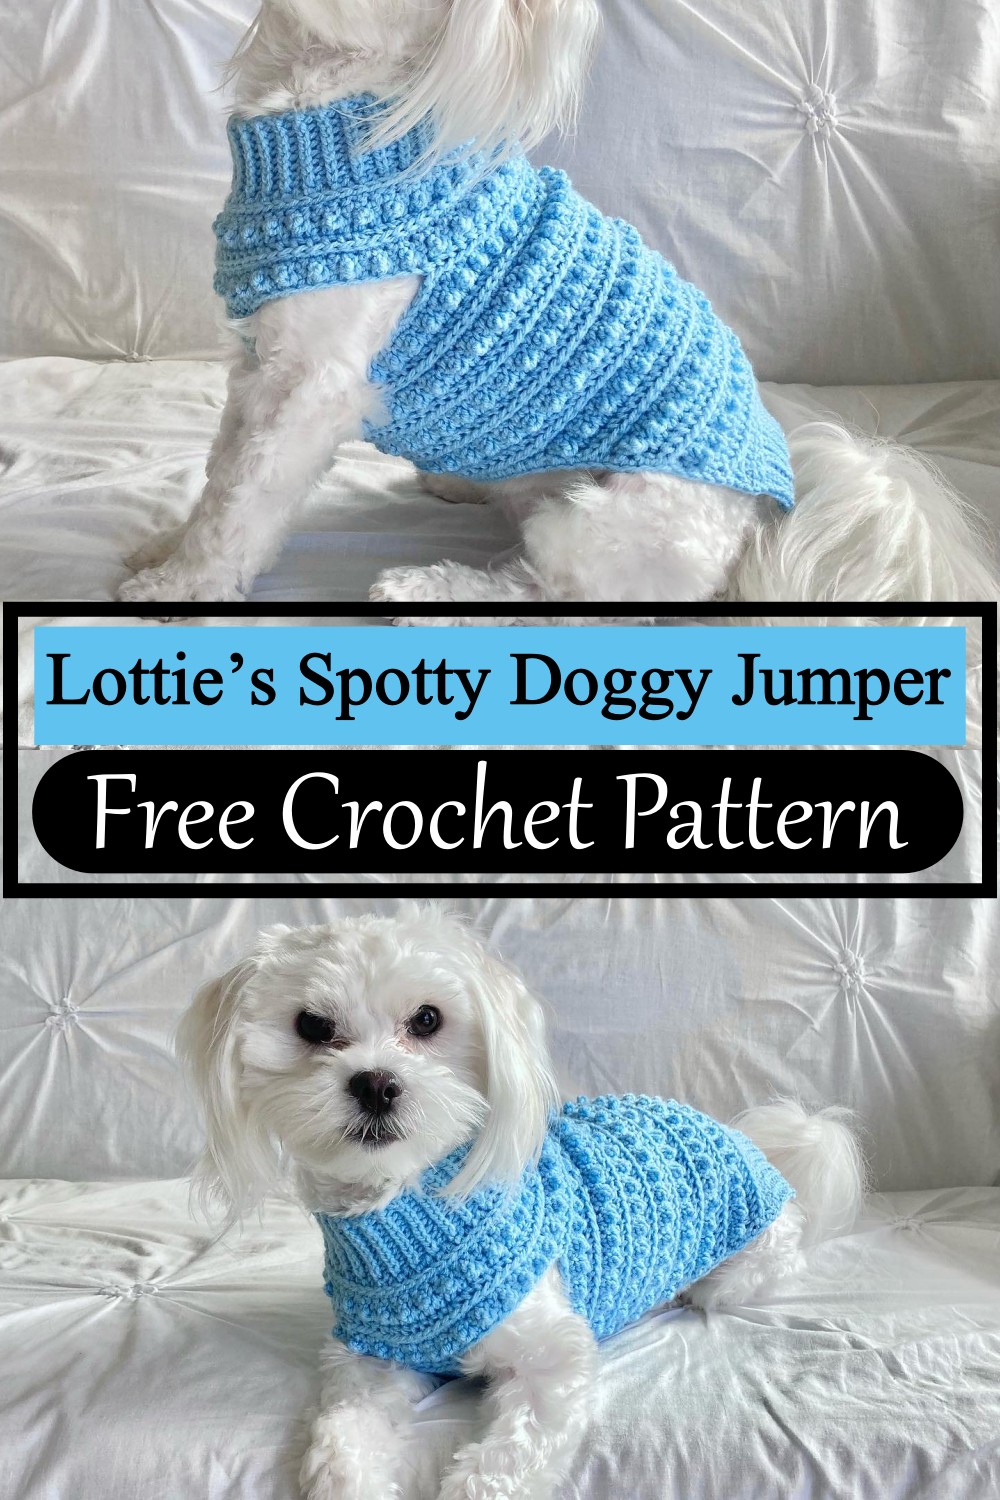 Lottie’s Spotty Doggy Jumper